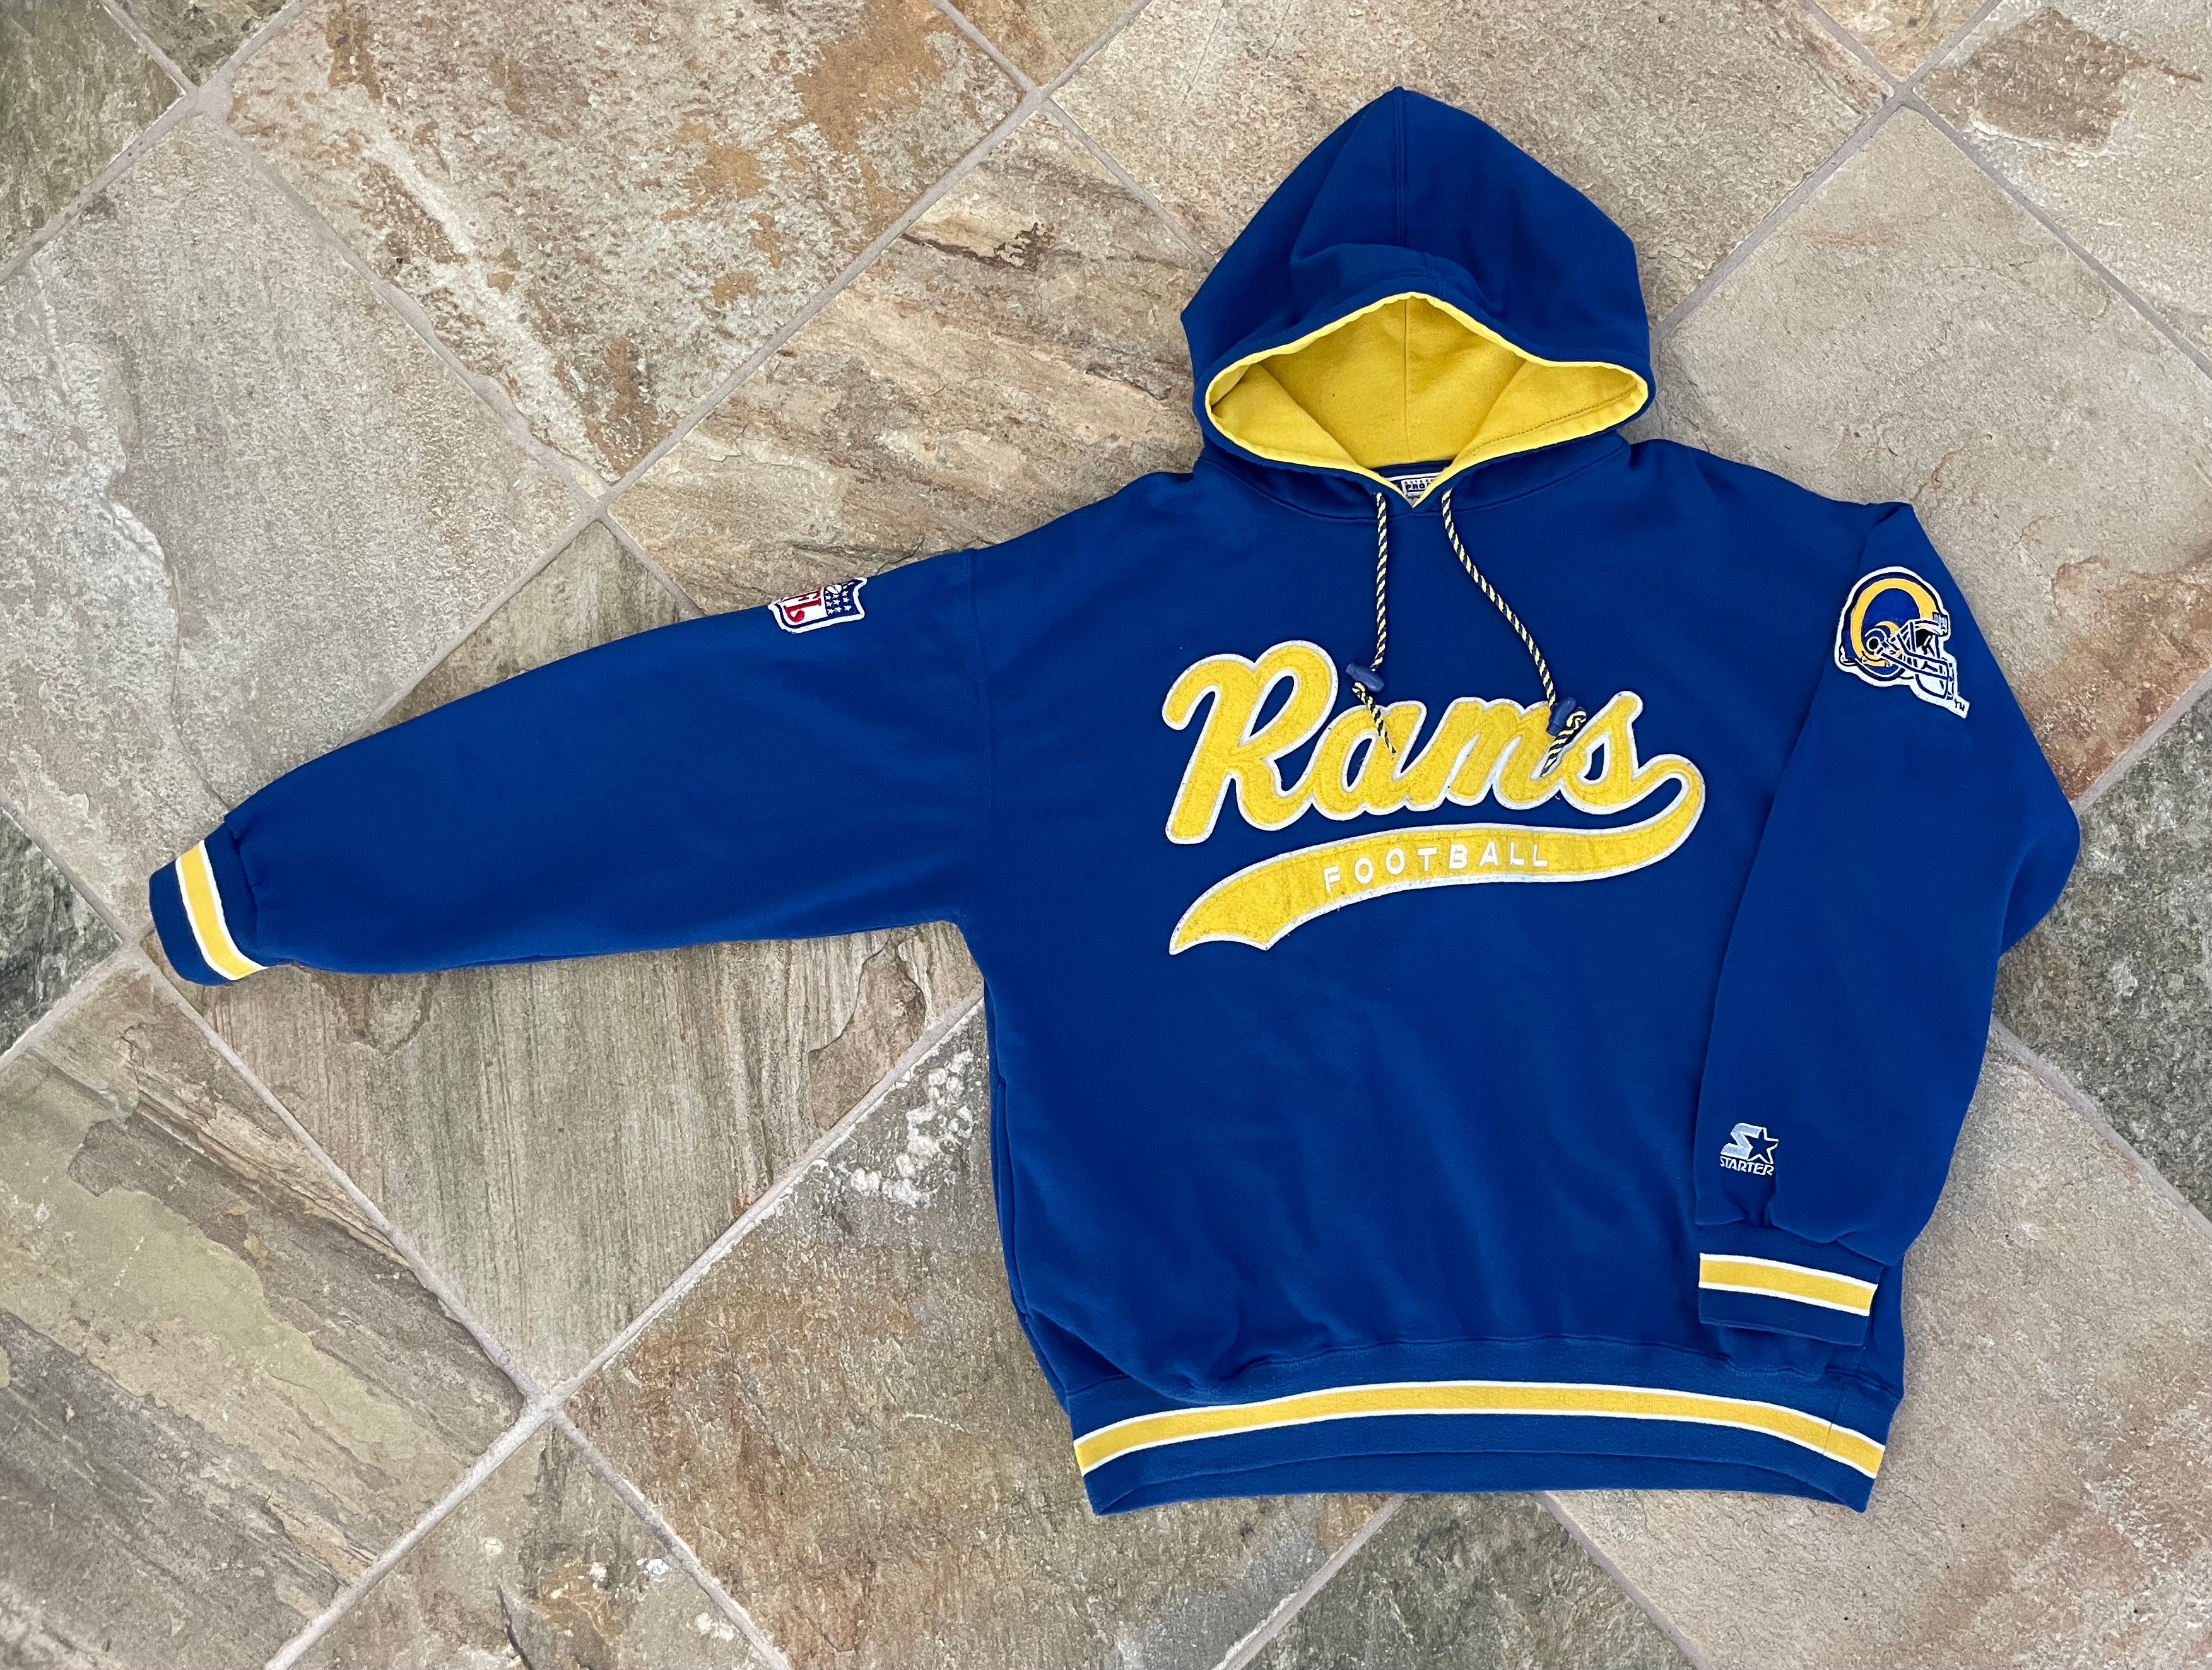 Los Angeles LA Rams Vintage 90s Hooded Sweatshirt NFL Football 